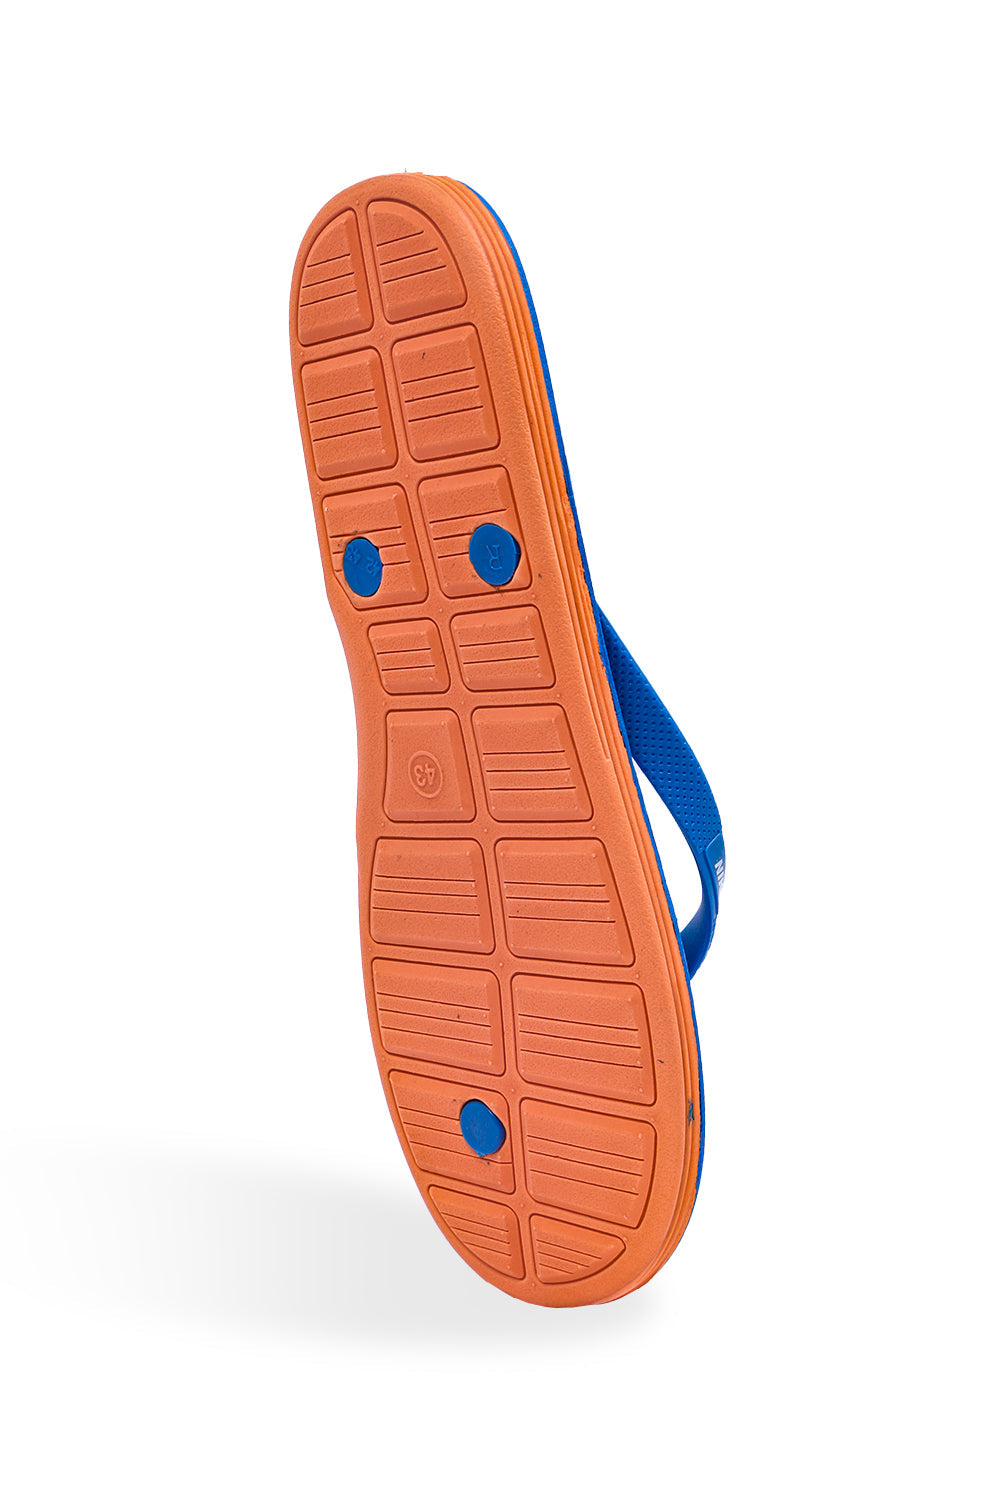 N-I-K-E Imported Soft Flip Flops In Blue